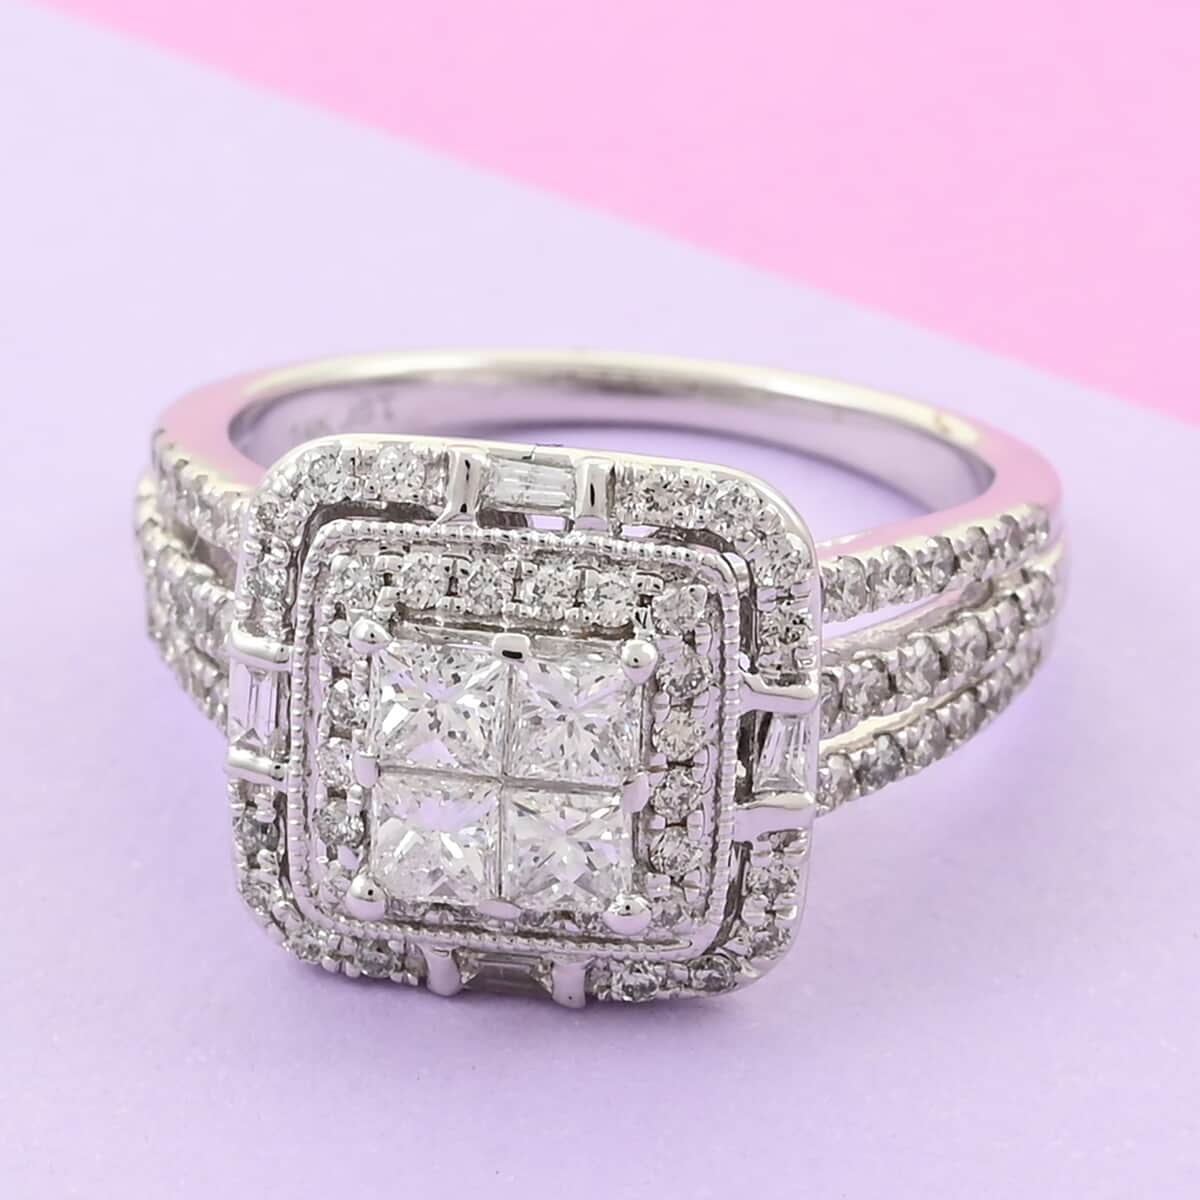 NY Closeout 14K White Gold I I2 Diamond Halo Ring (Size 7.0) 6.50 Grams 1.25 ctw image number 1